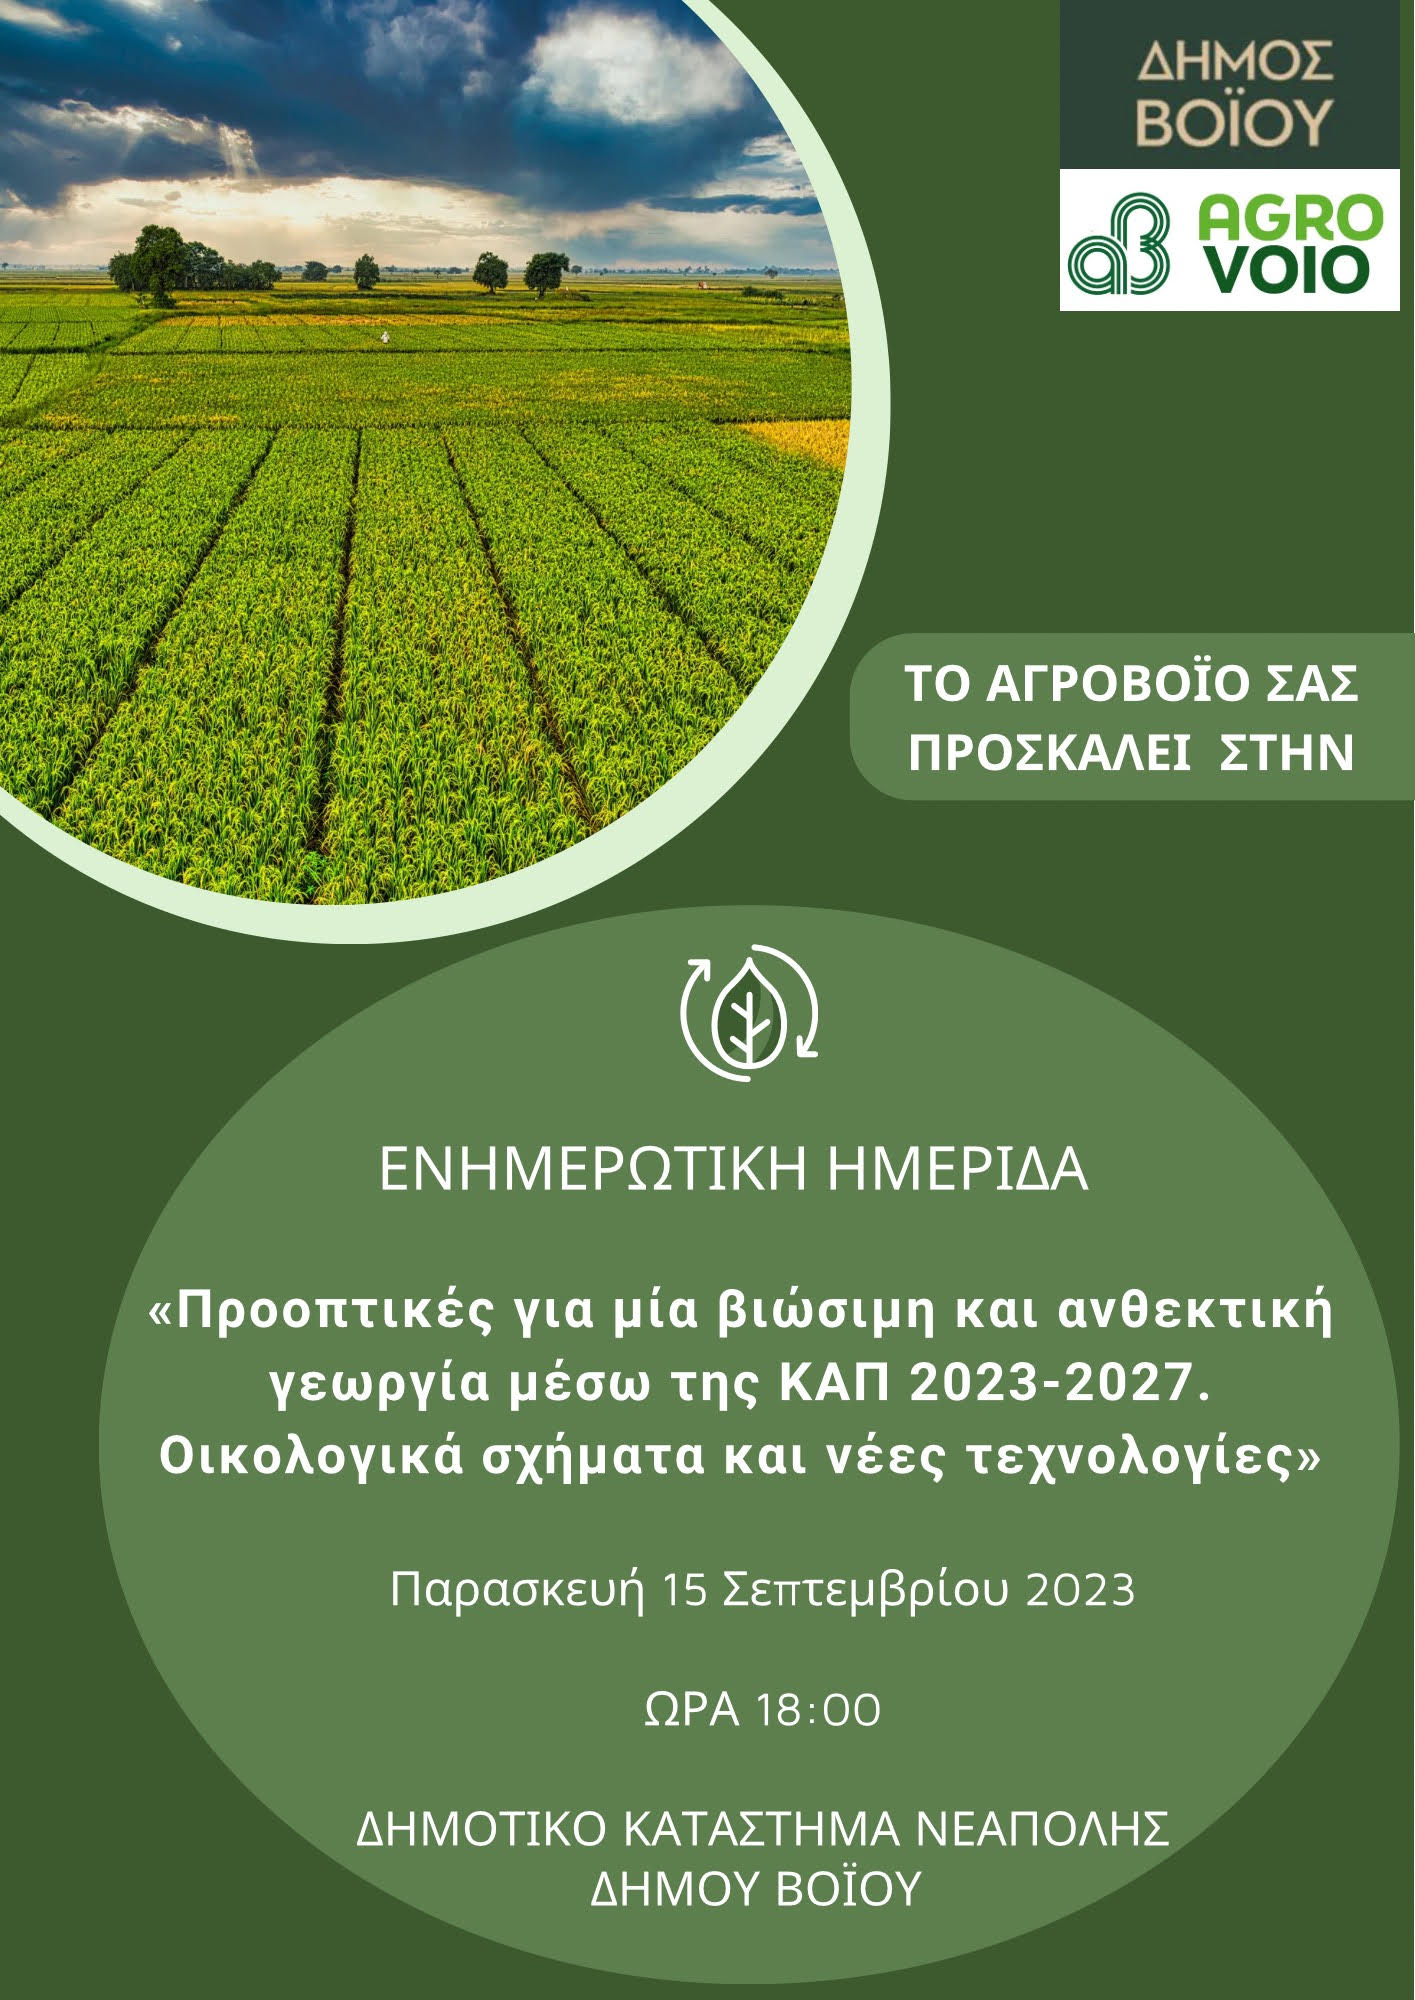 Ενημερωτική ημερίδα: «Προοπτικές για μία βιώσιμη και ανθεκτική γεωργία μέσω της ΚΑΠ 2023-2027. Οικολογικά σχήματα και νέες τεχνολογίες»